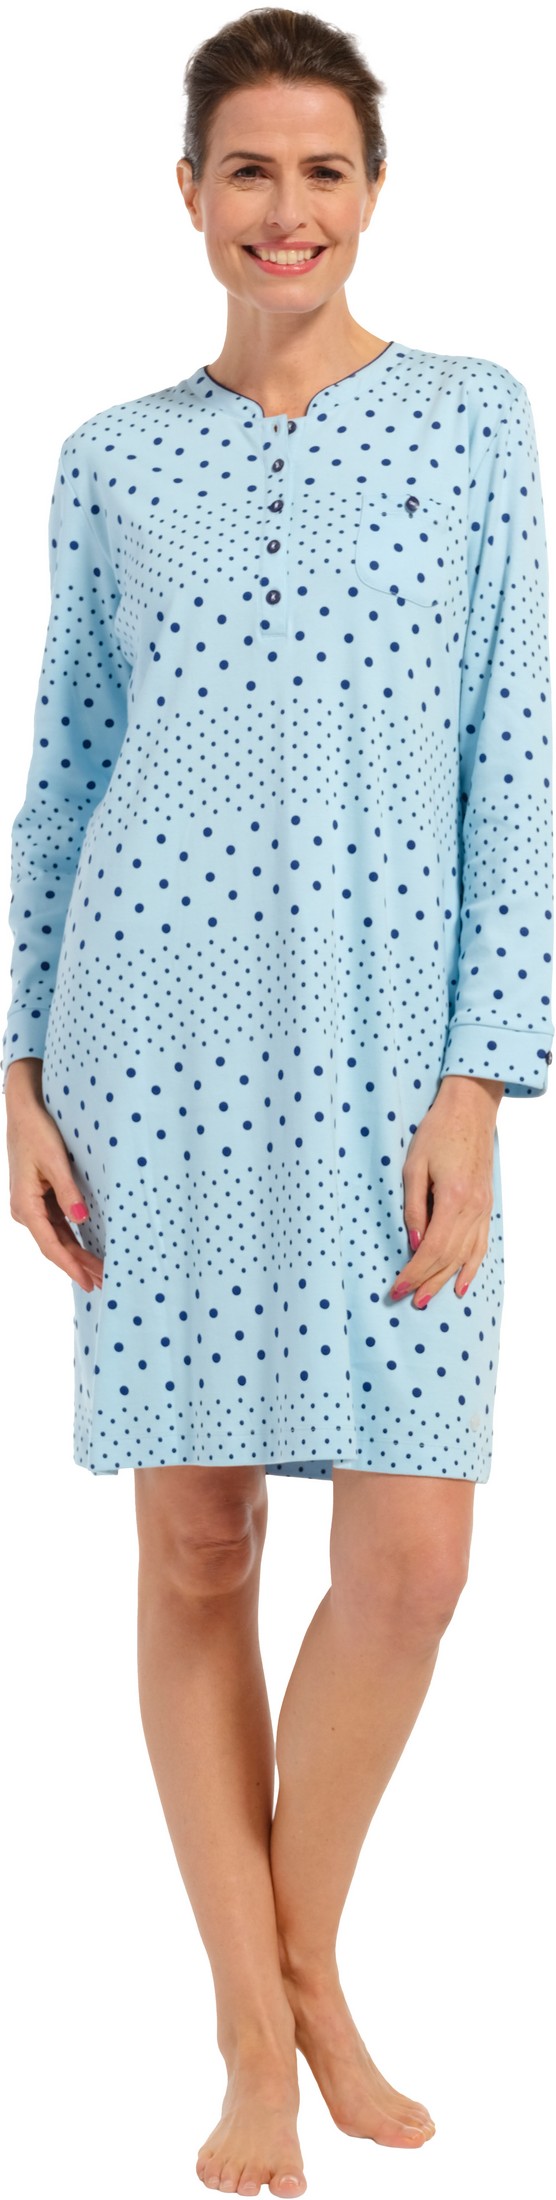 Pastunette dames nachthemd 10232-162-4 - Blauw - 38